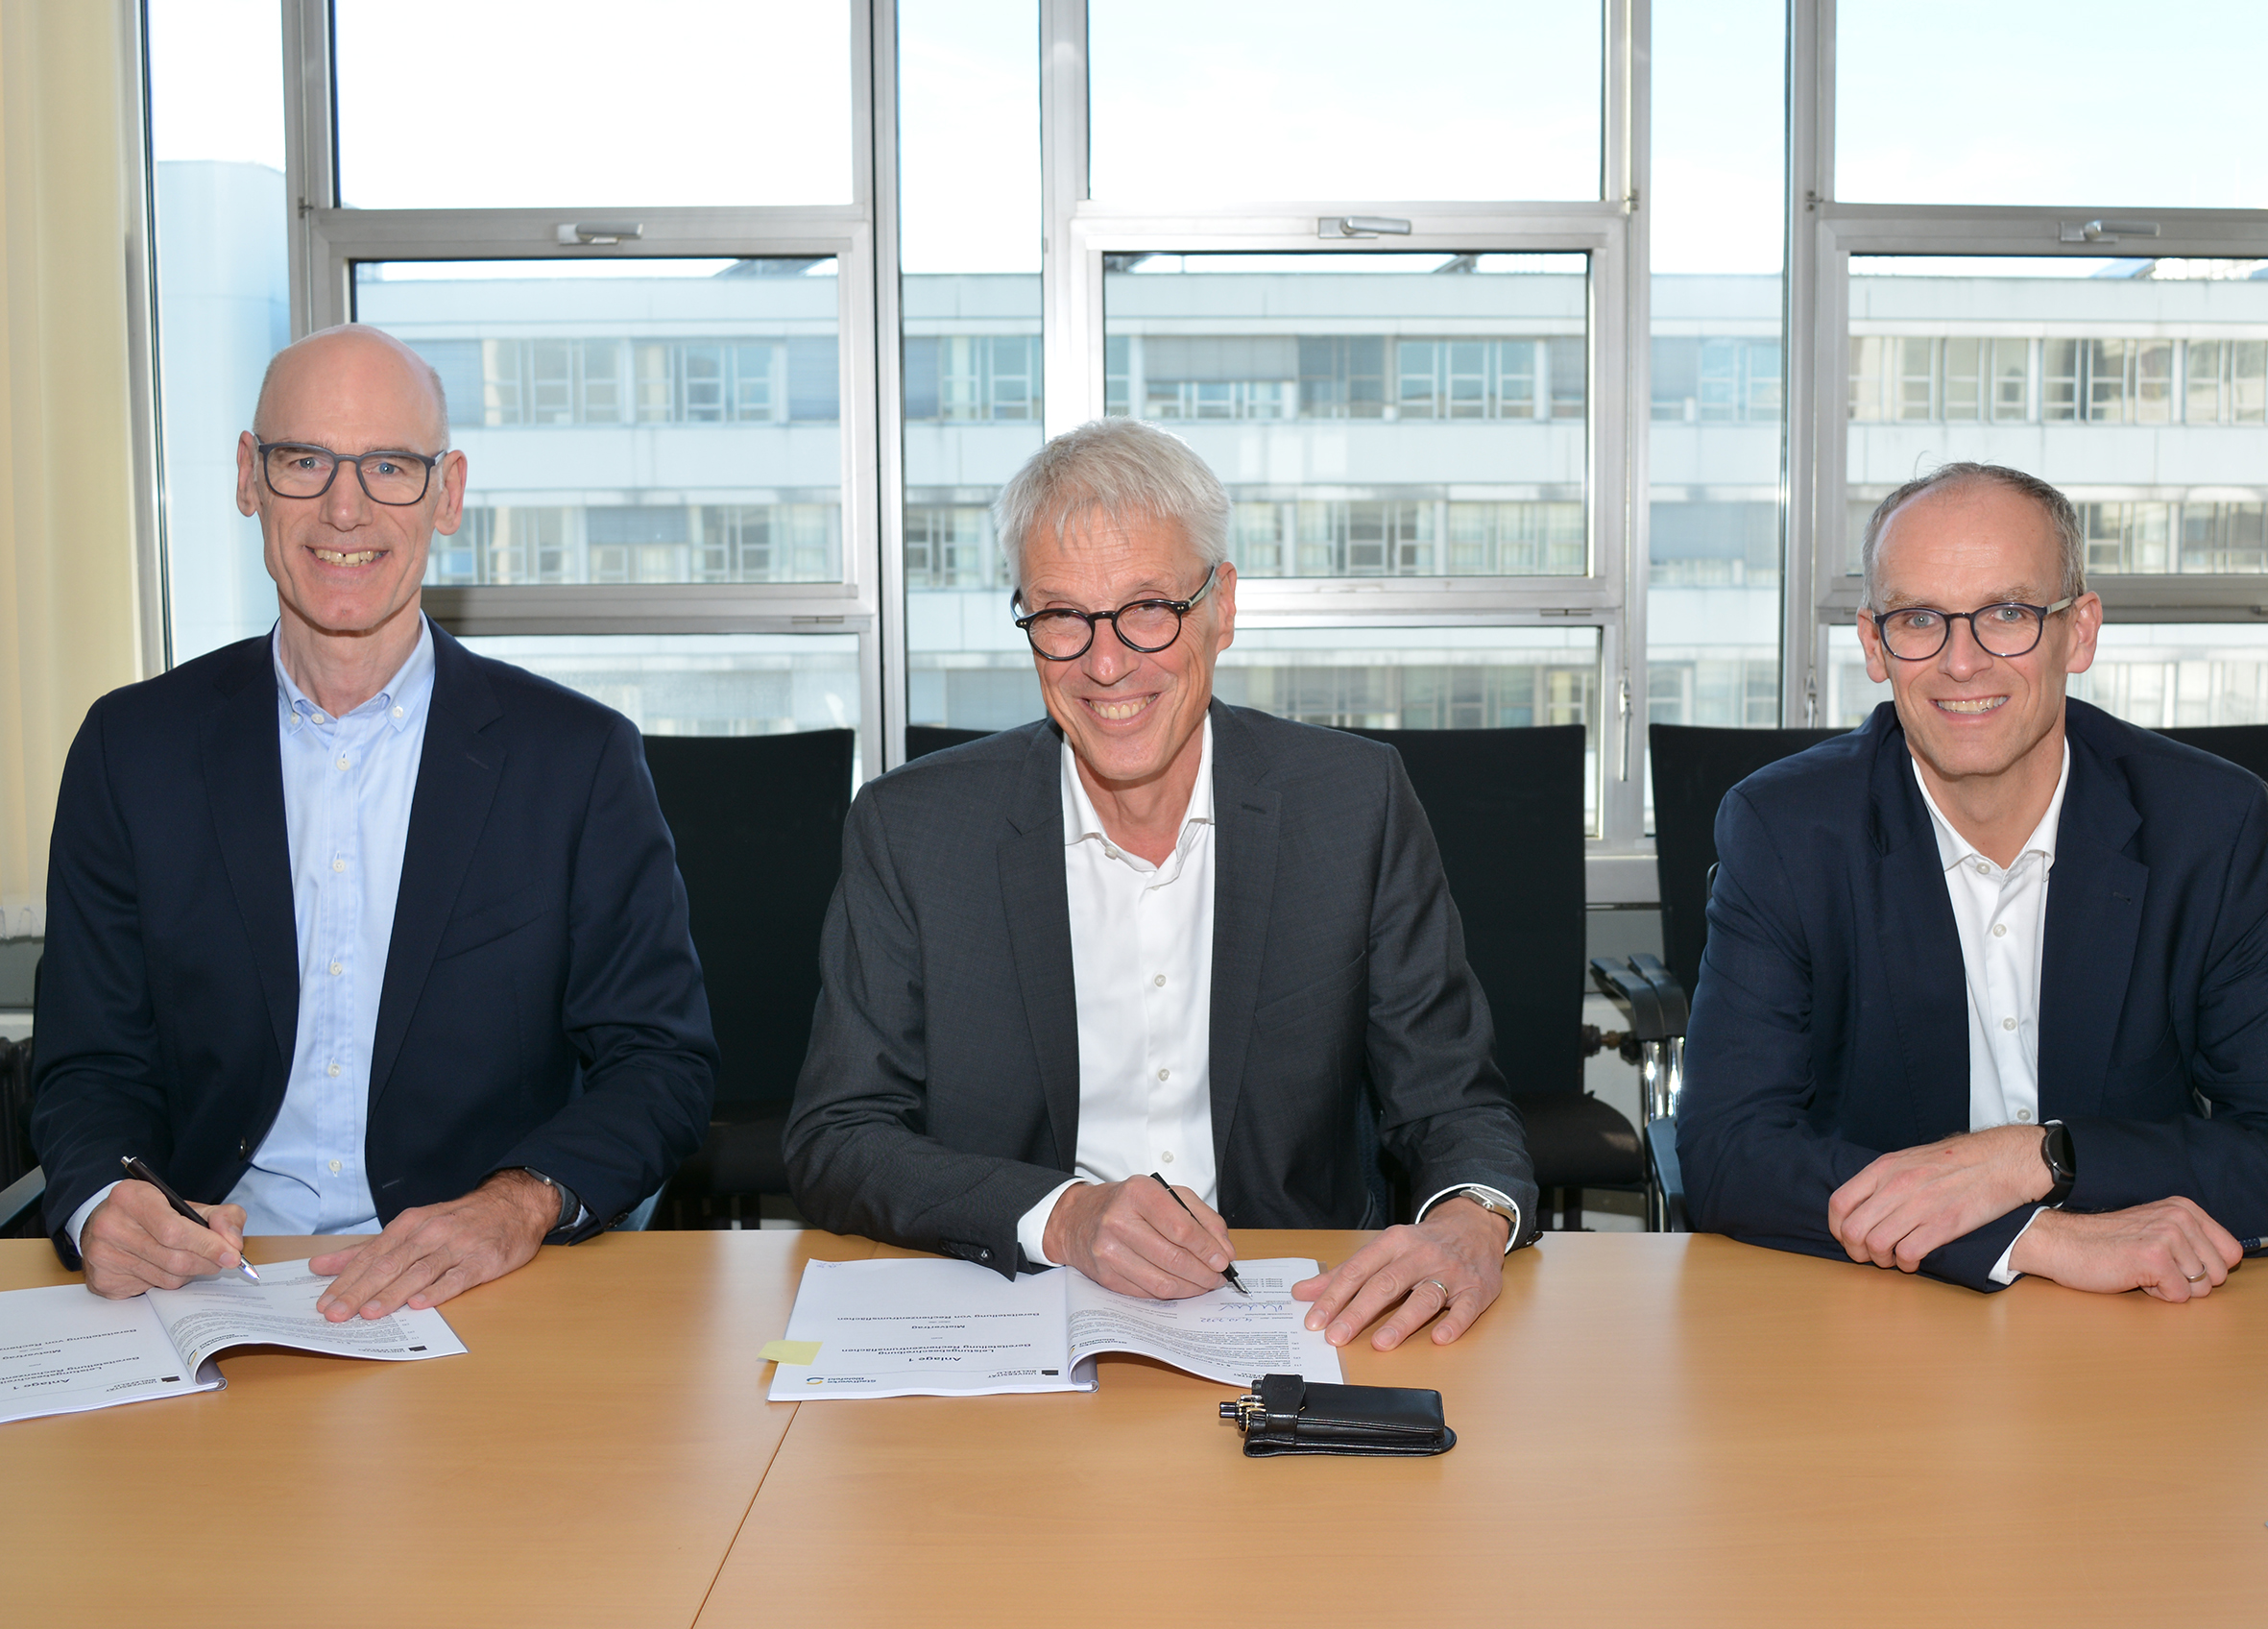 Freuen sich über die Vertragsunterzeichnung (von links): Stadtwerke-Geschäftsführer Rainer Müller, Dr. Stephan Becker (Kanzler der Universität Bielefeld), und Stadtwerke-Geschäftsführer Martin Uekmann.